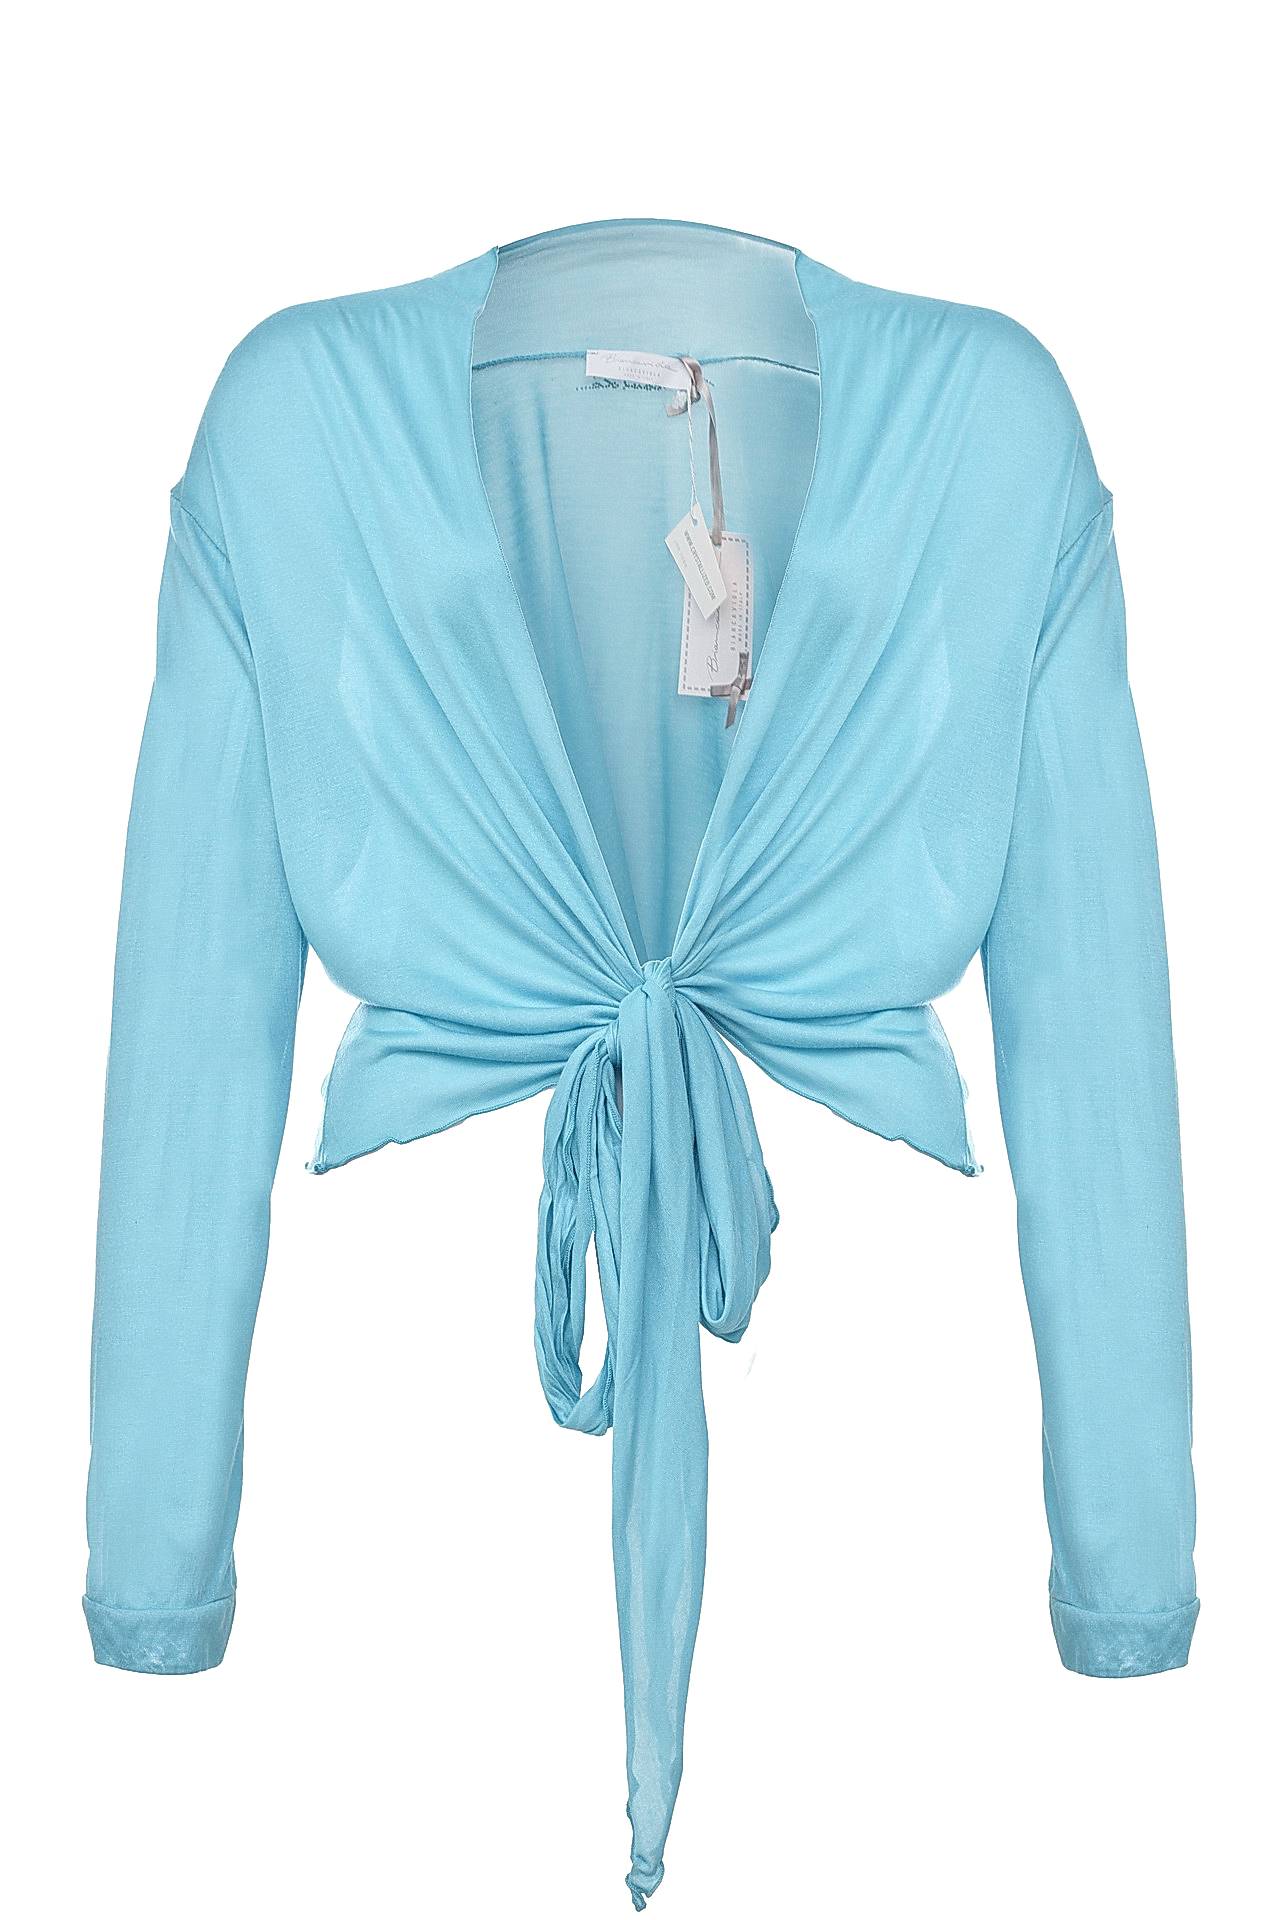 Одежда женская Блузка BIANCA VIOLA (RR80681/11.1). Купить за 3750 руб.